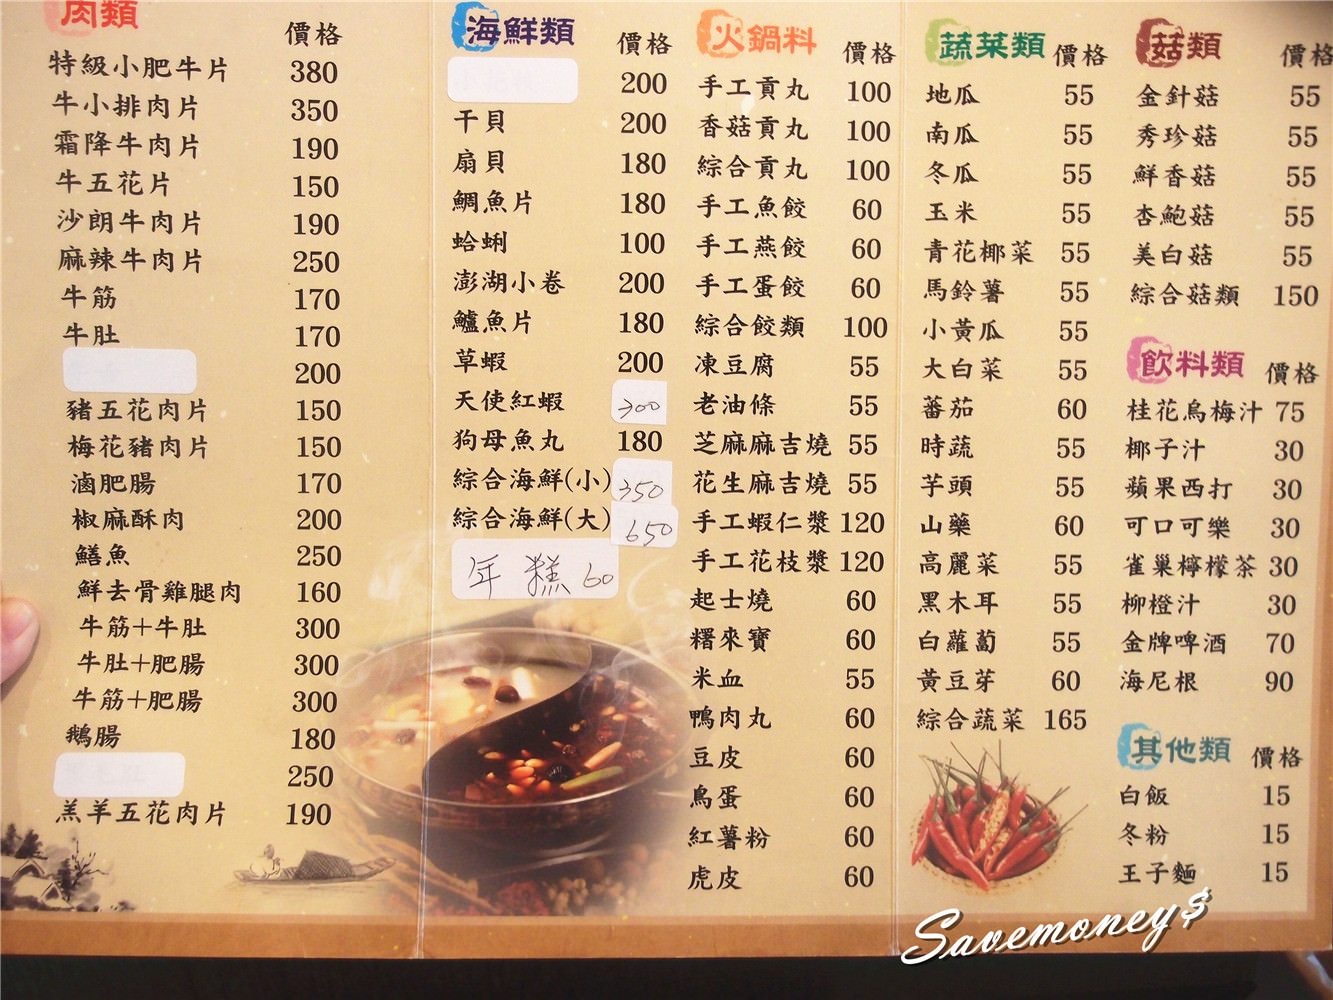 【豐原美食】台中麻辣火鍋~錦官印象老成都,味覺的極致饗宴,吃過還想再回味!